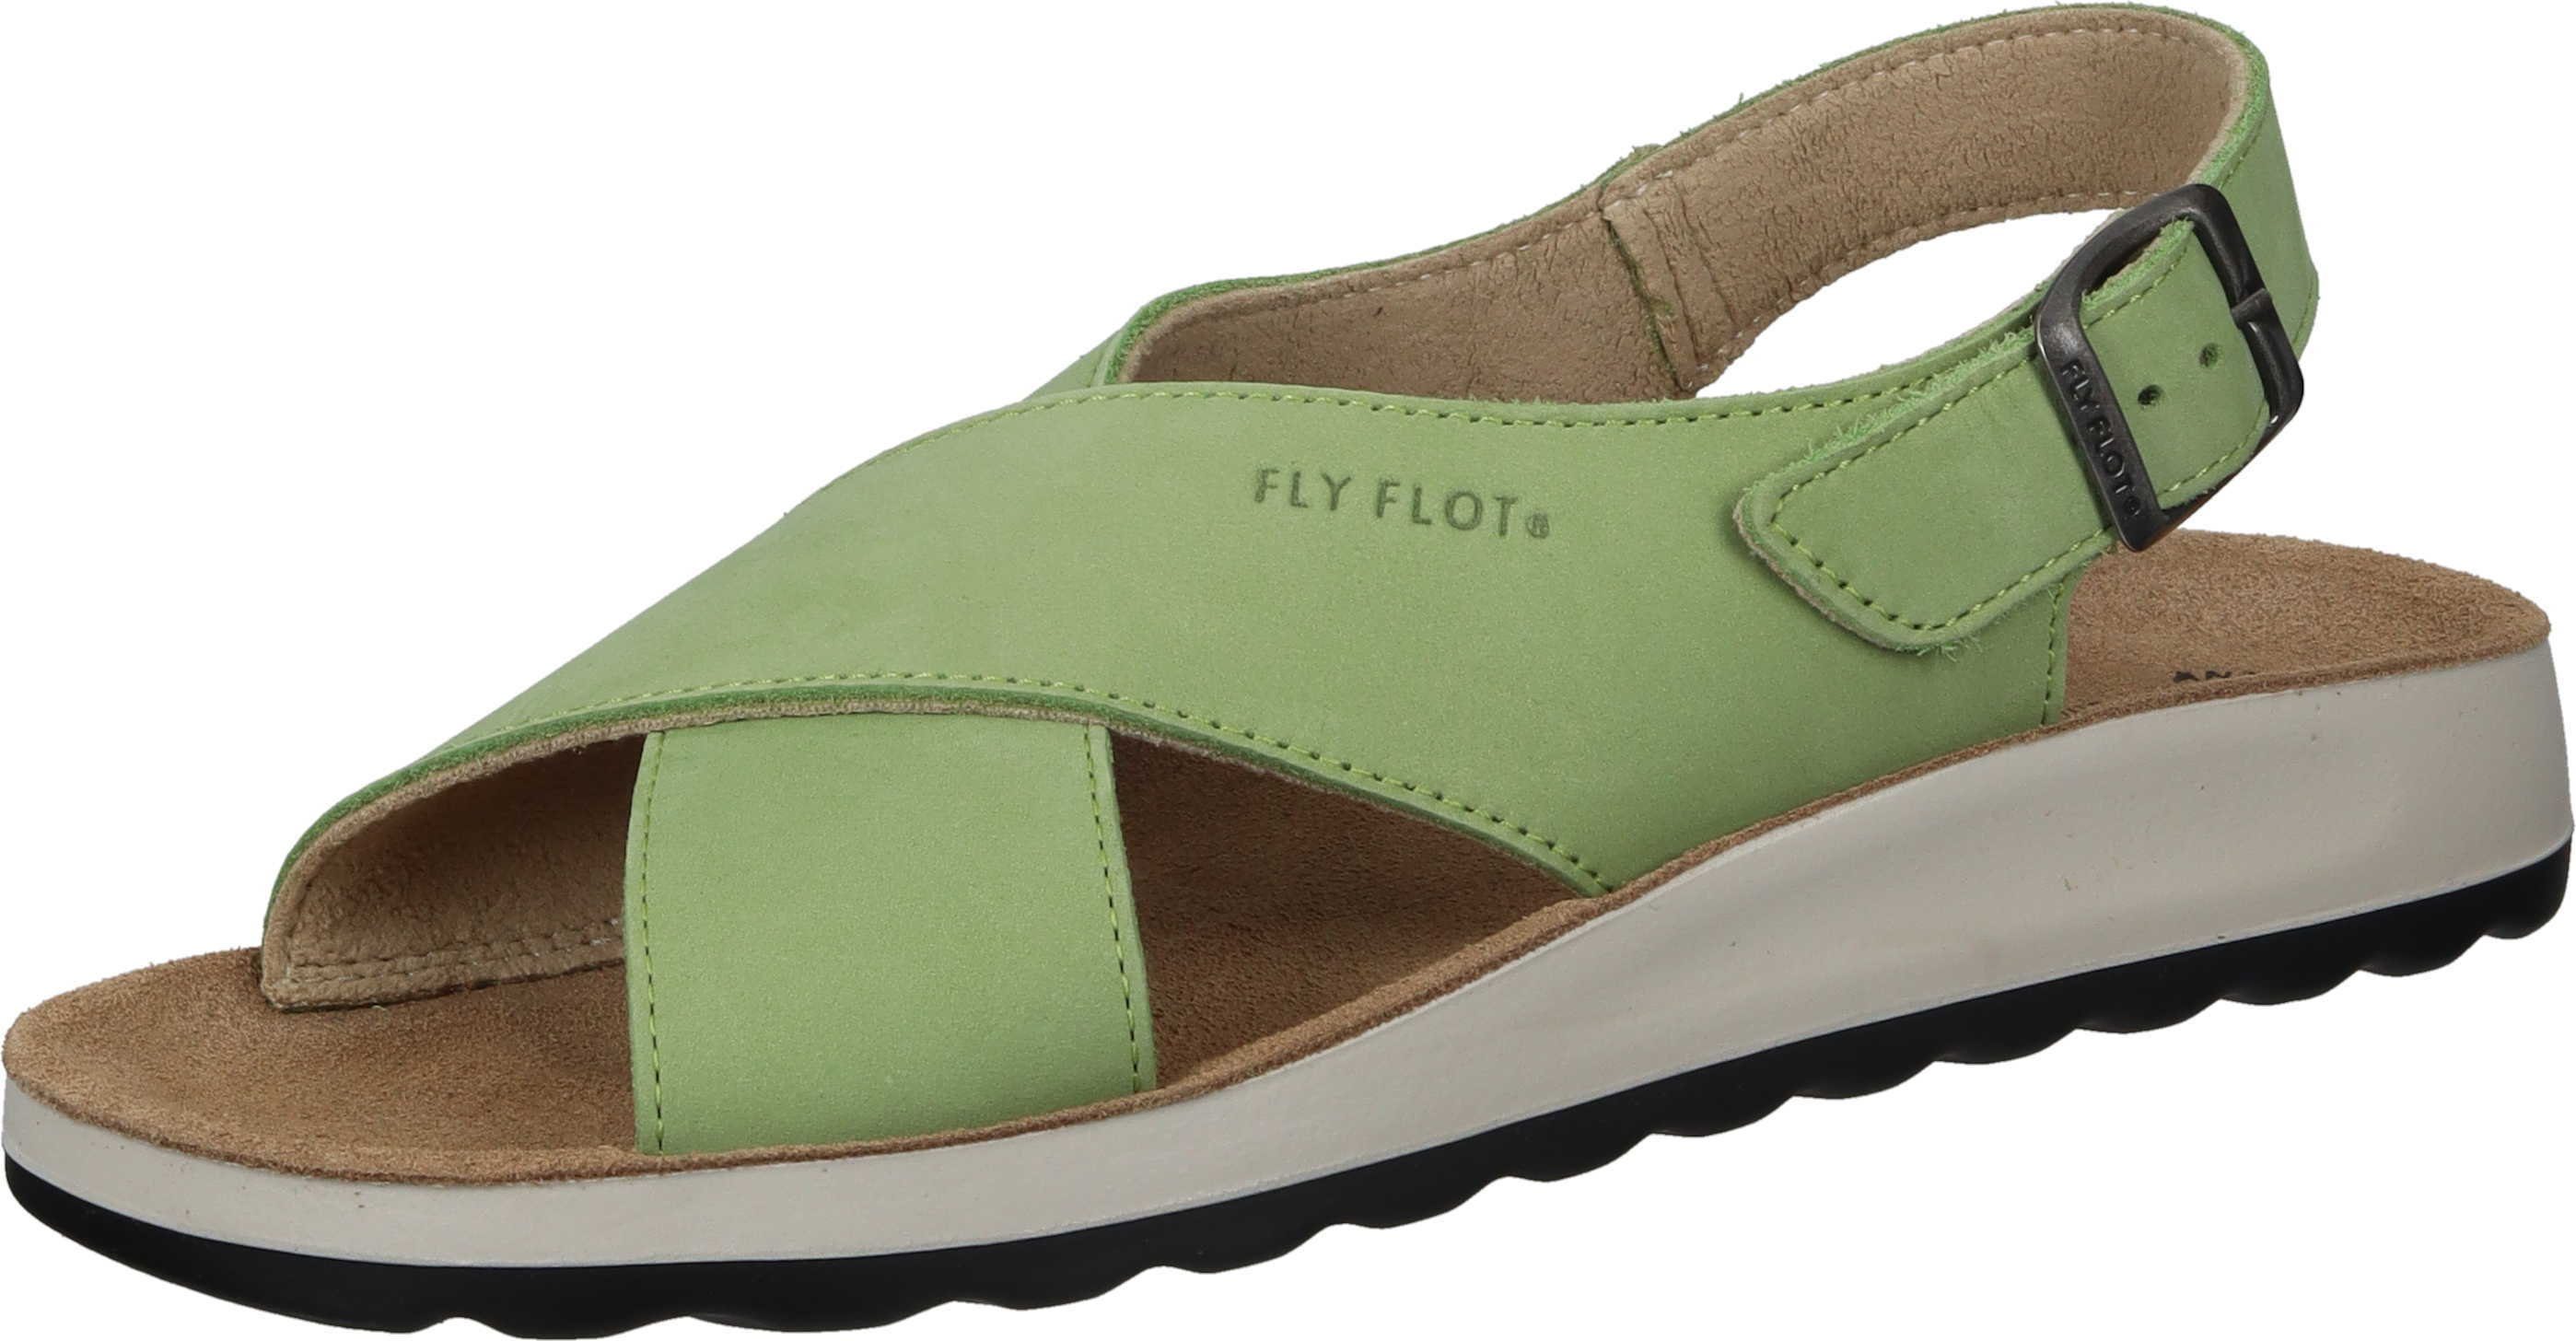 Fly Flot Sandaletten Sandalette aus Nubukleder grün